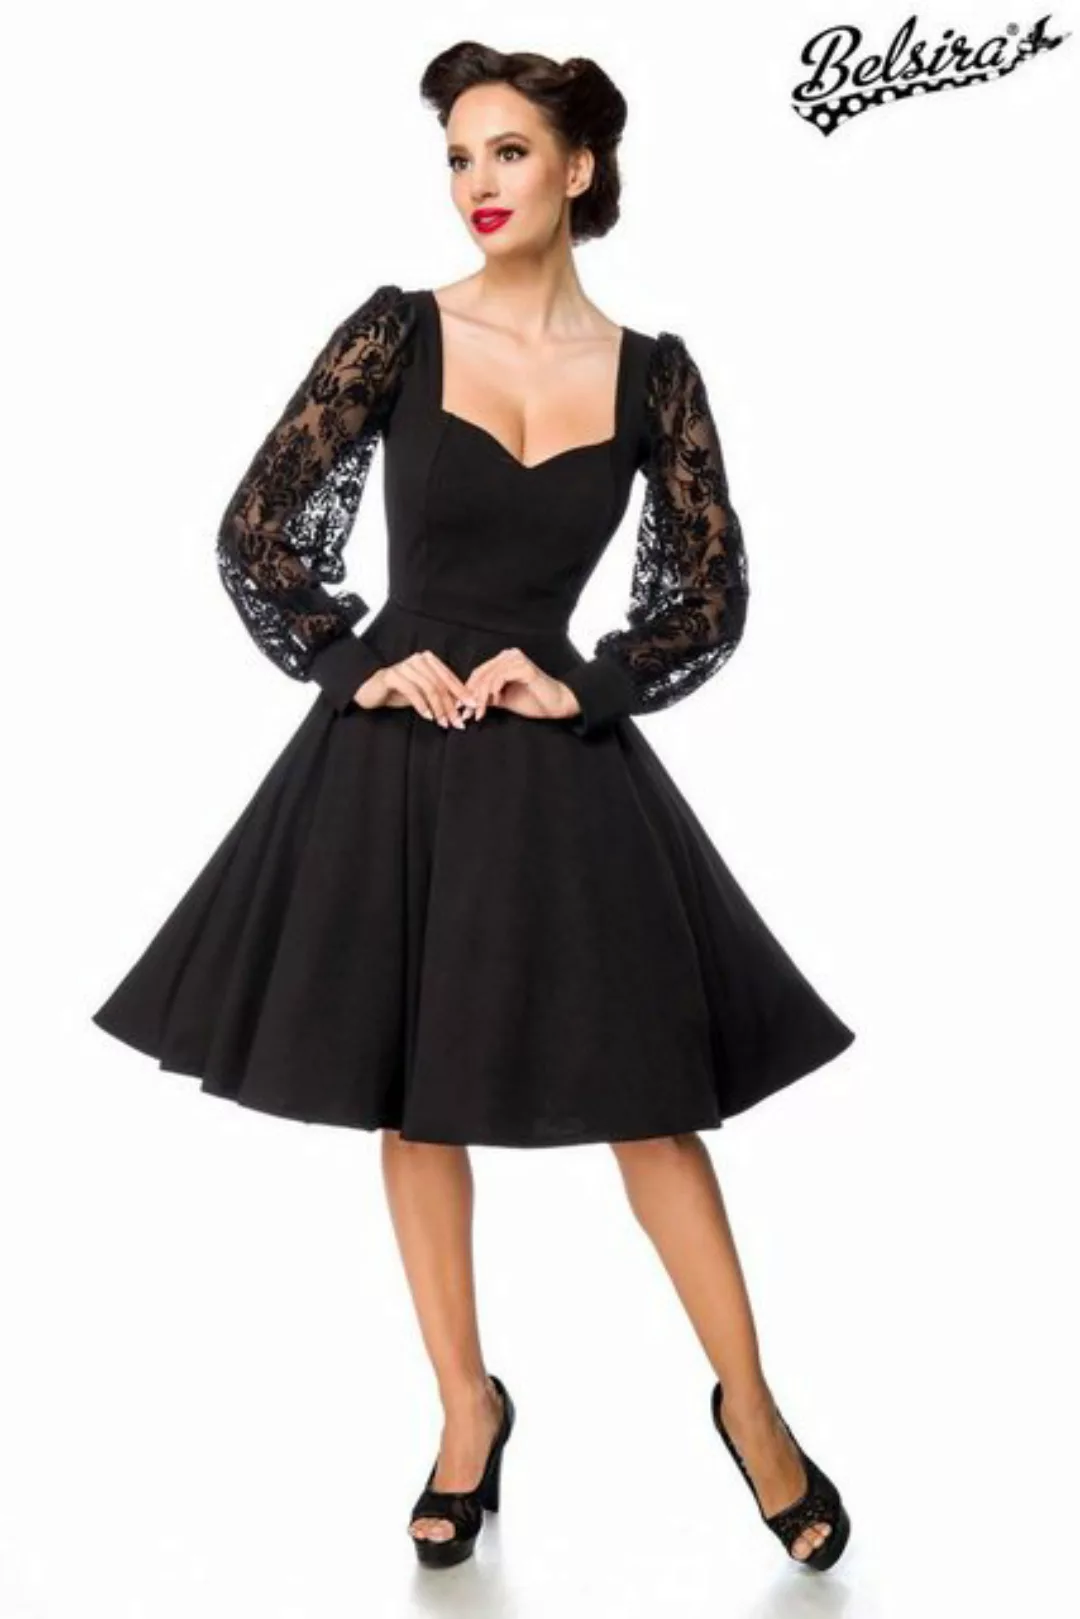 BELSIRA Trachtenkleid Belsira - elegantes Kleid mit Spitzenärmel - 2XL - günstig online kaufen